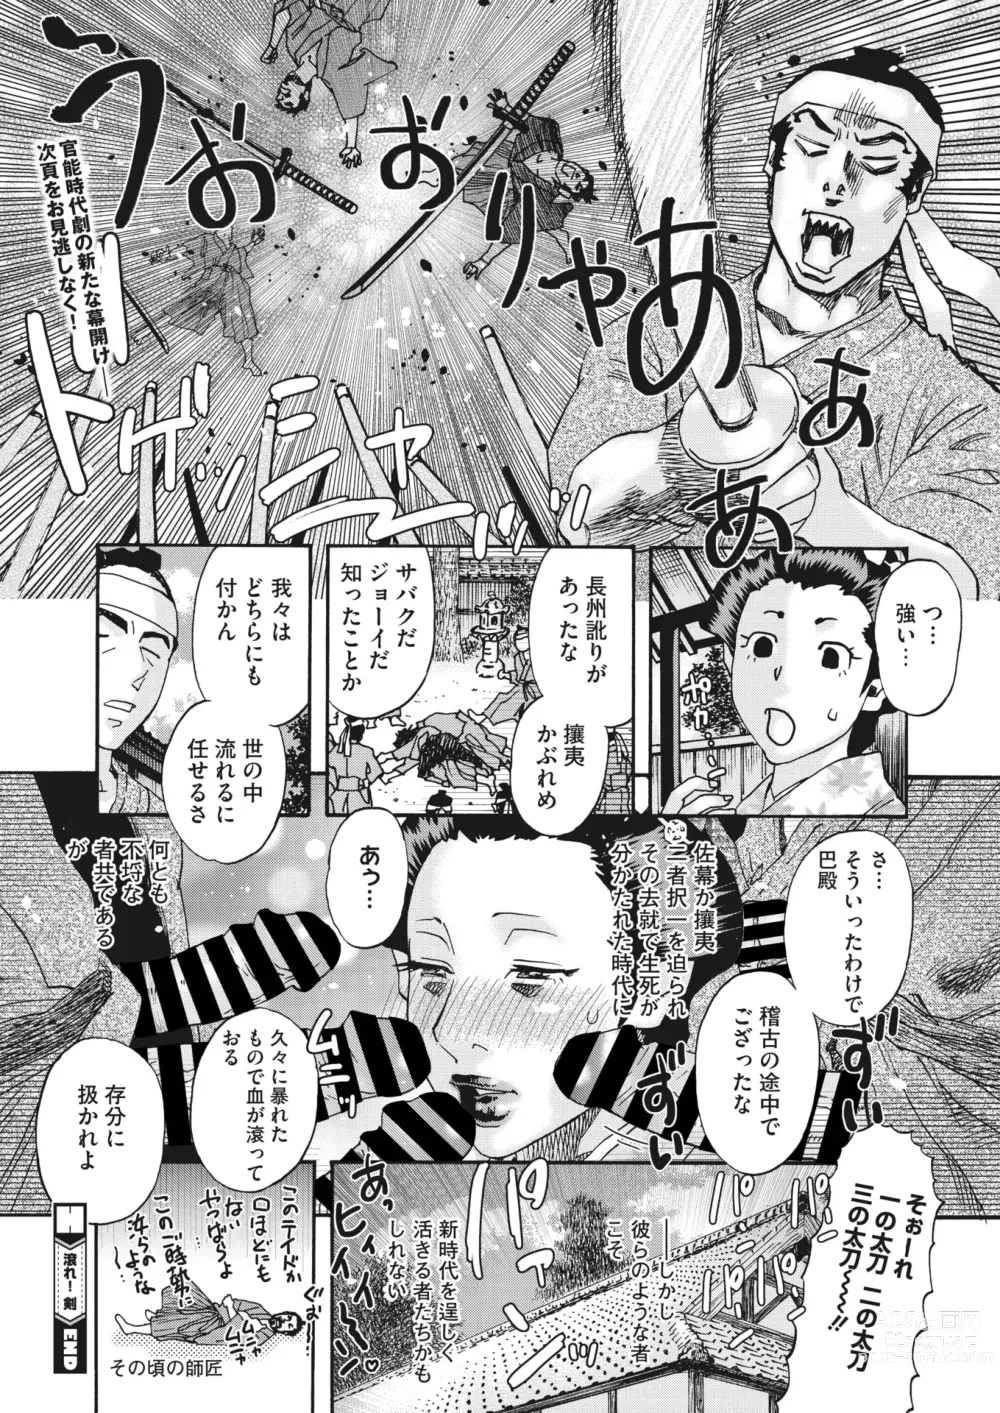 Page 305 of manga COMIC HOTMiLK Koime Vol. 41